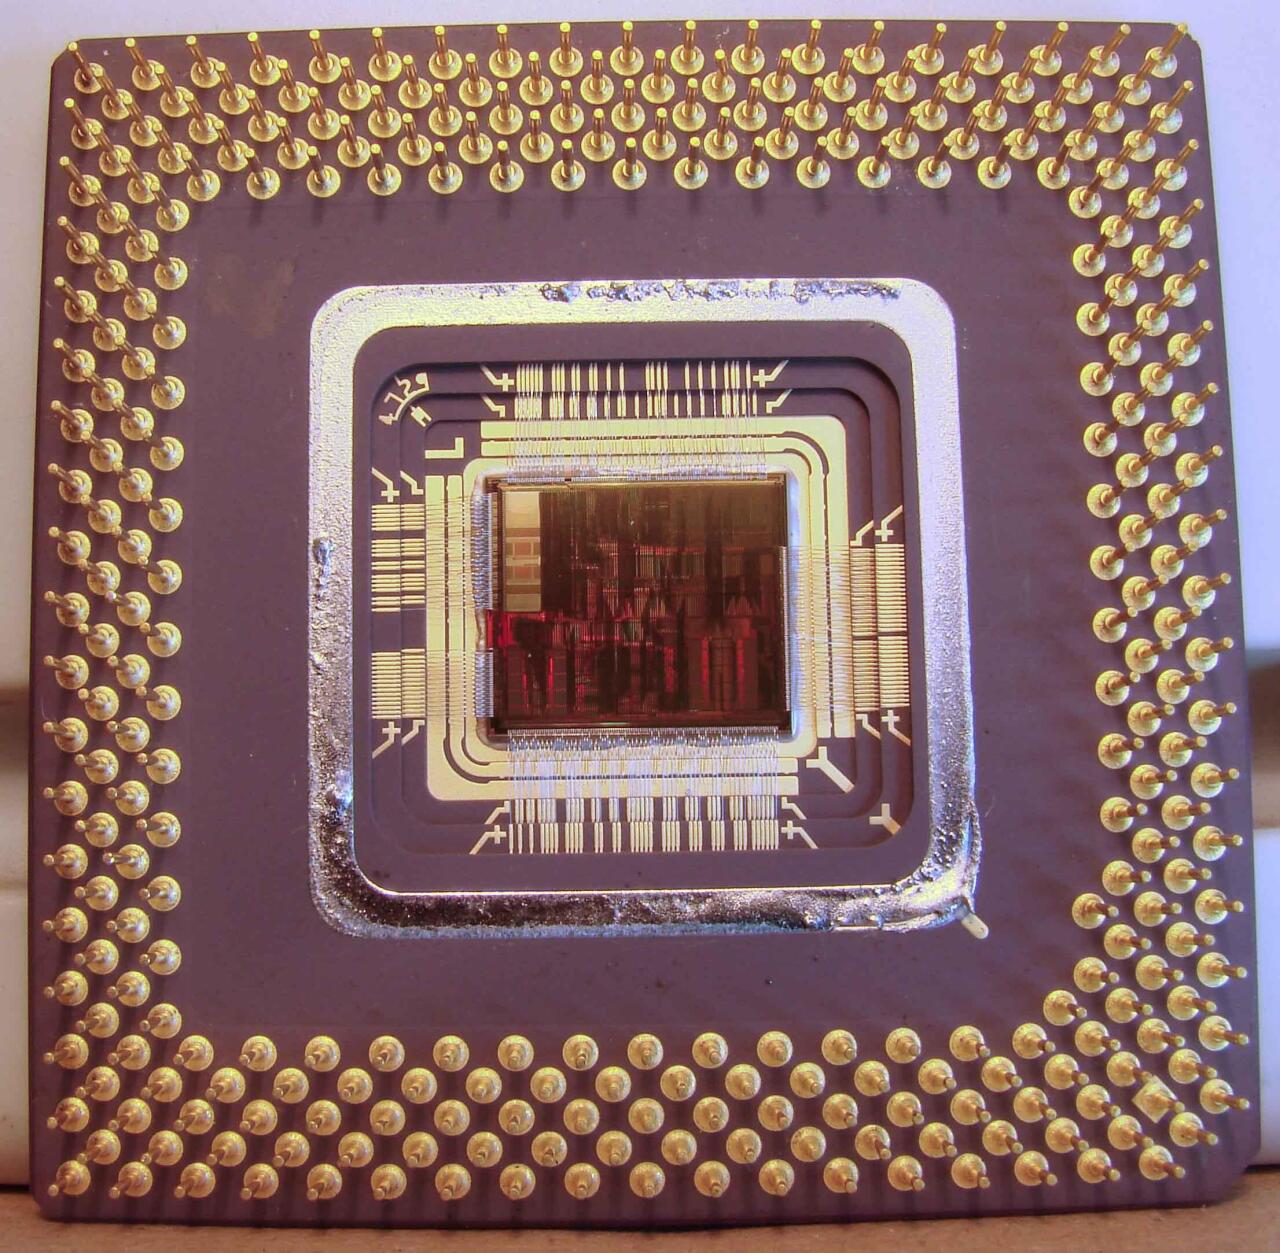 Intel Pentium mikroprozesadore bat